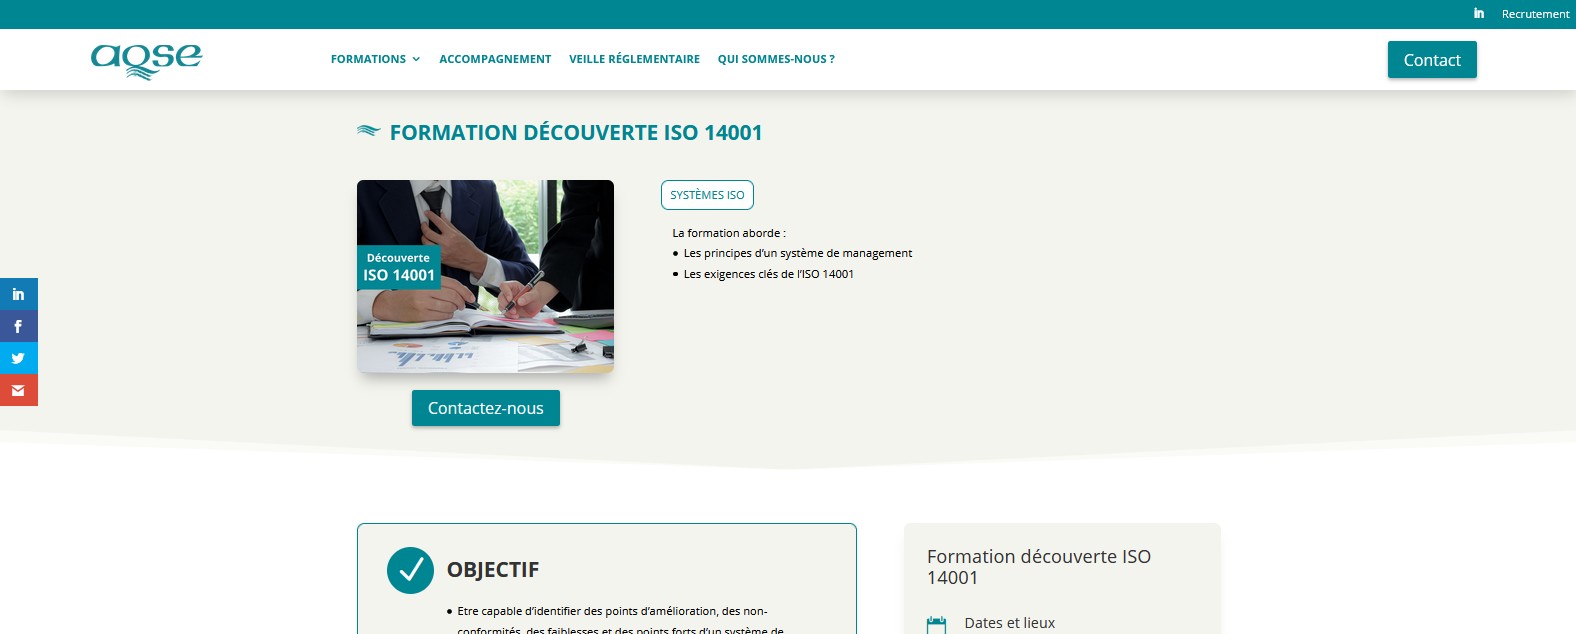 Formation environnement ISO 14001 découverte